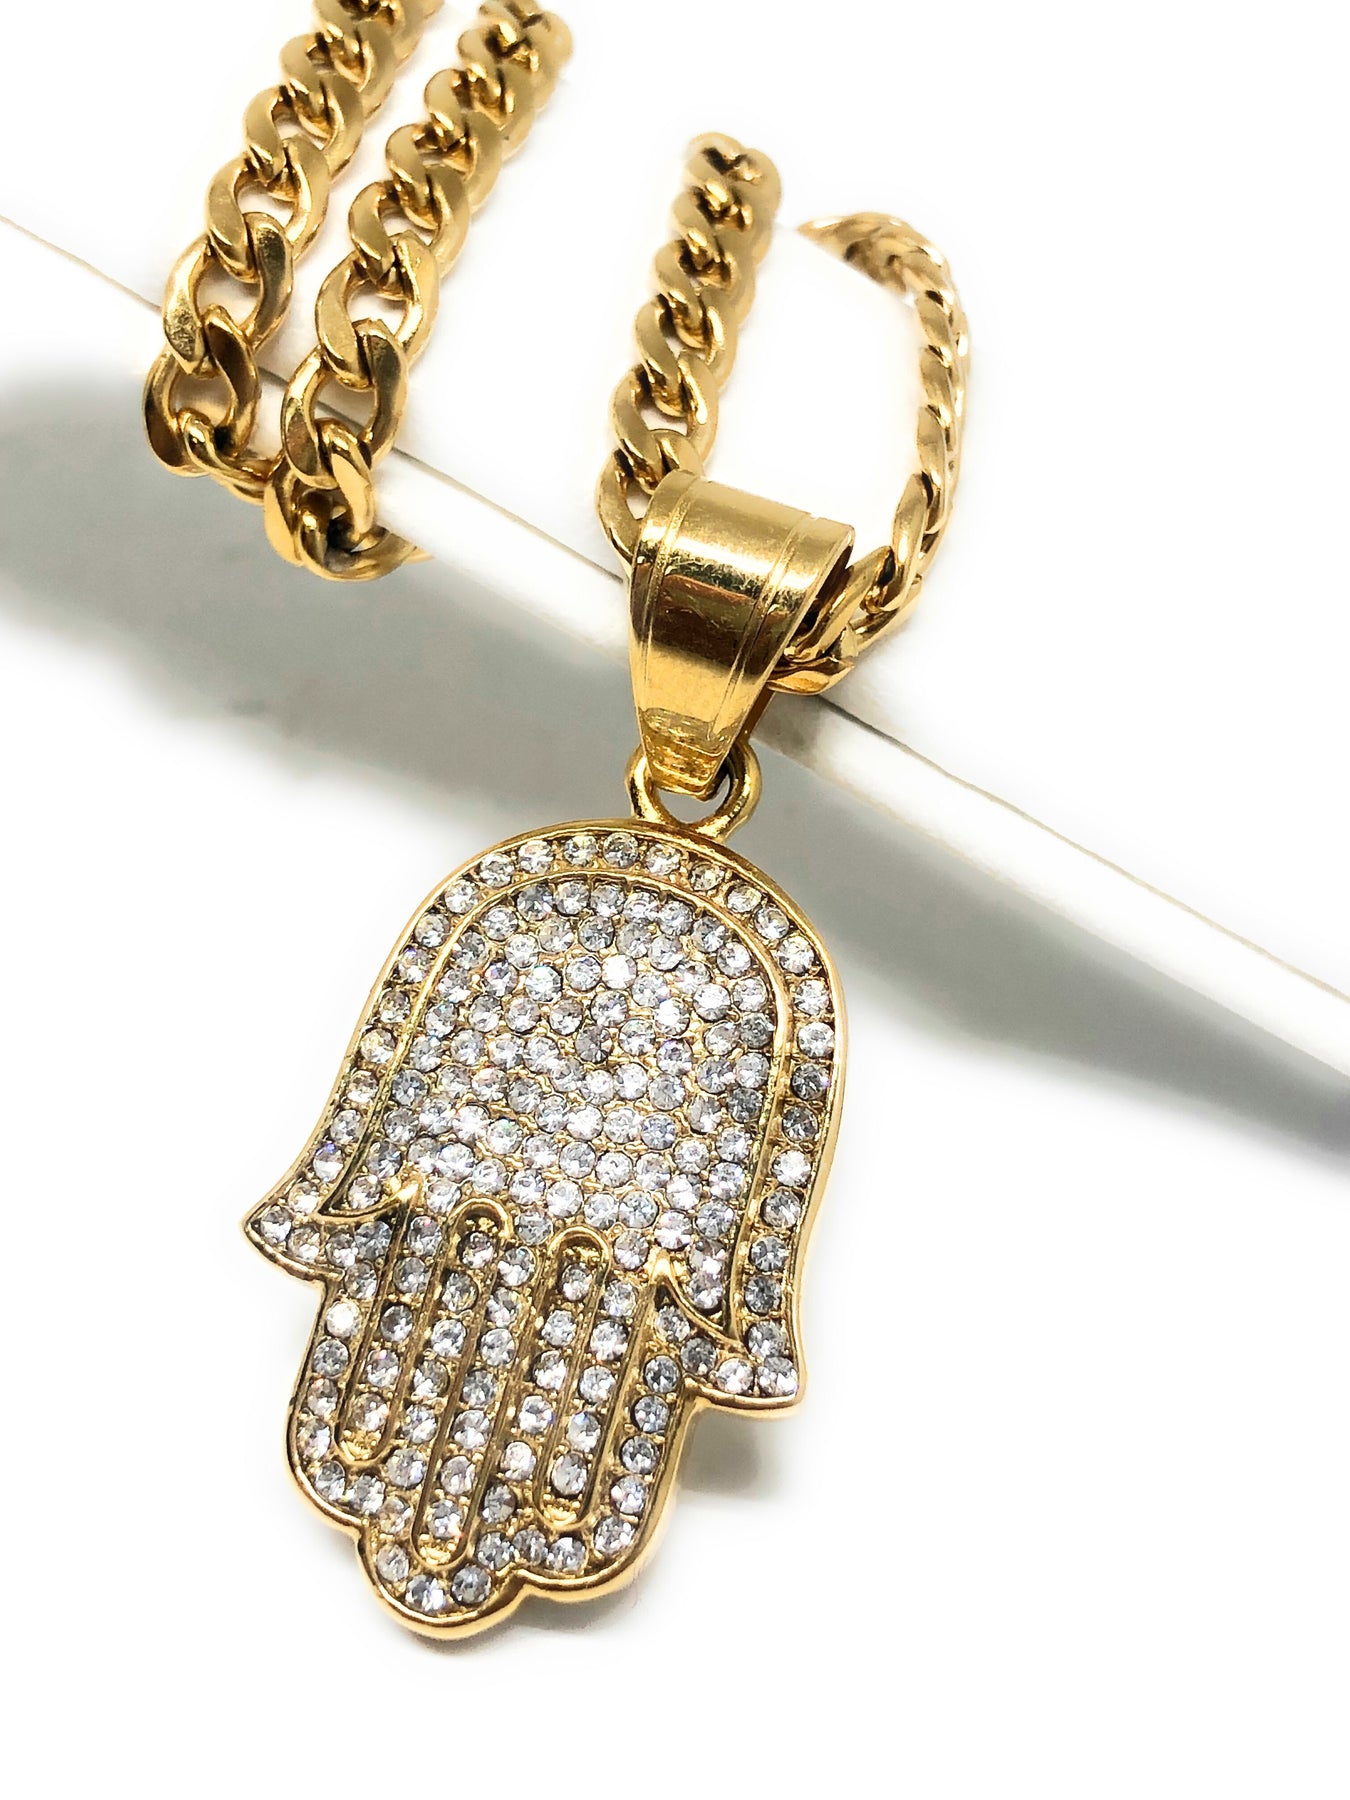 LOUISVUITTON Designer Jewelry Hip Hop Designer Necklace  Butterfly Iced Out Pendant Mens 14k Gold Chains Initial Letter P13 From  Huang1202668, $12.06